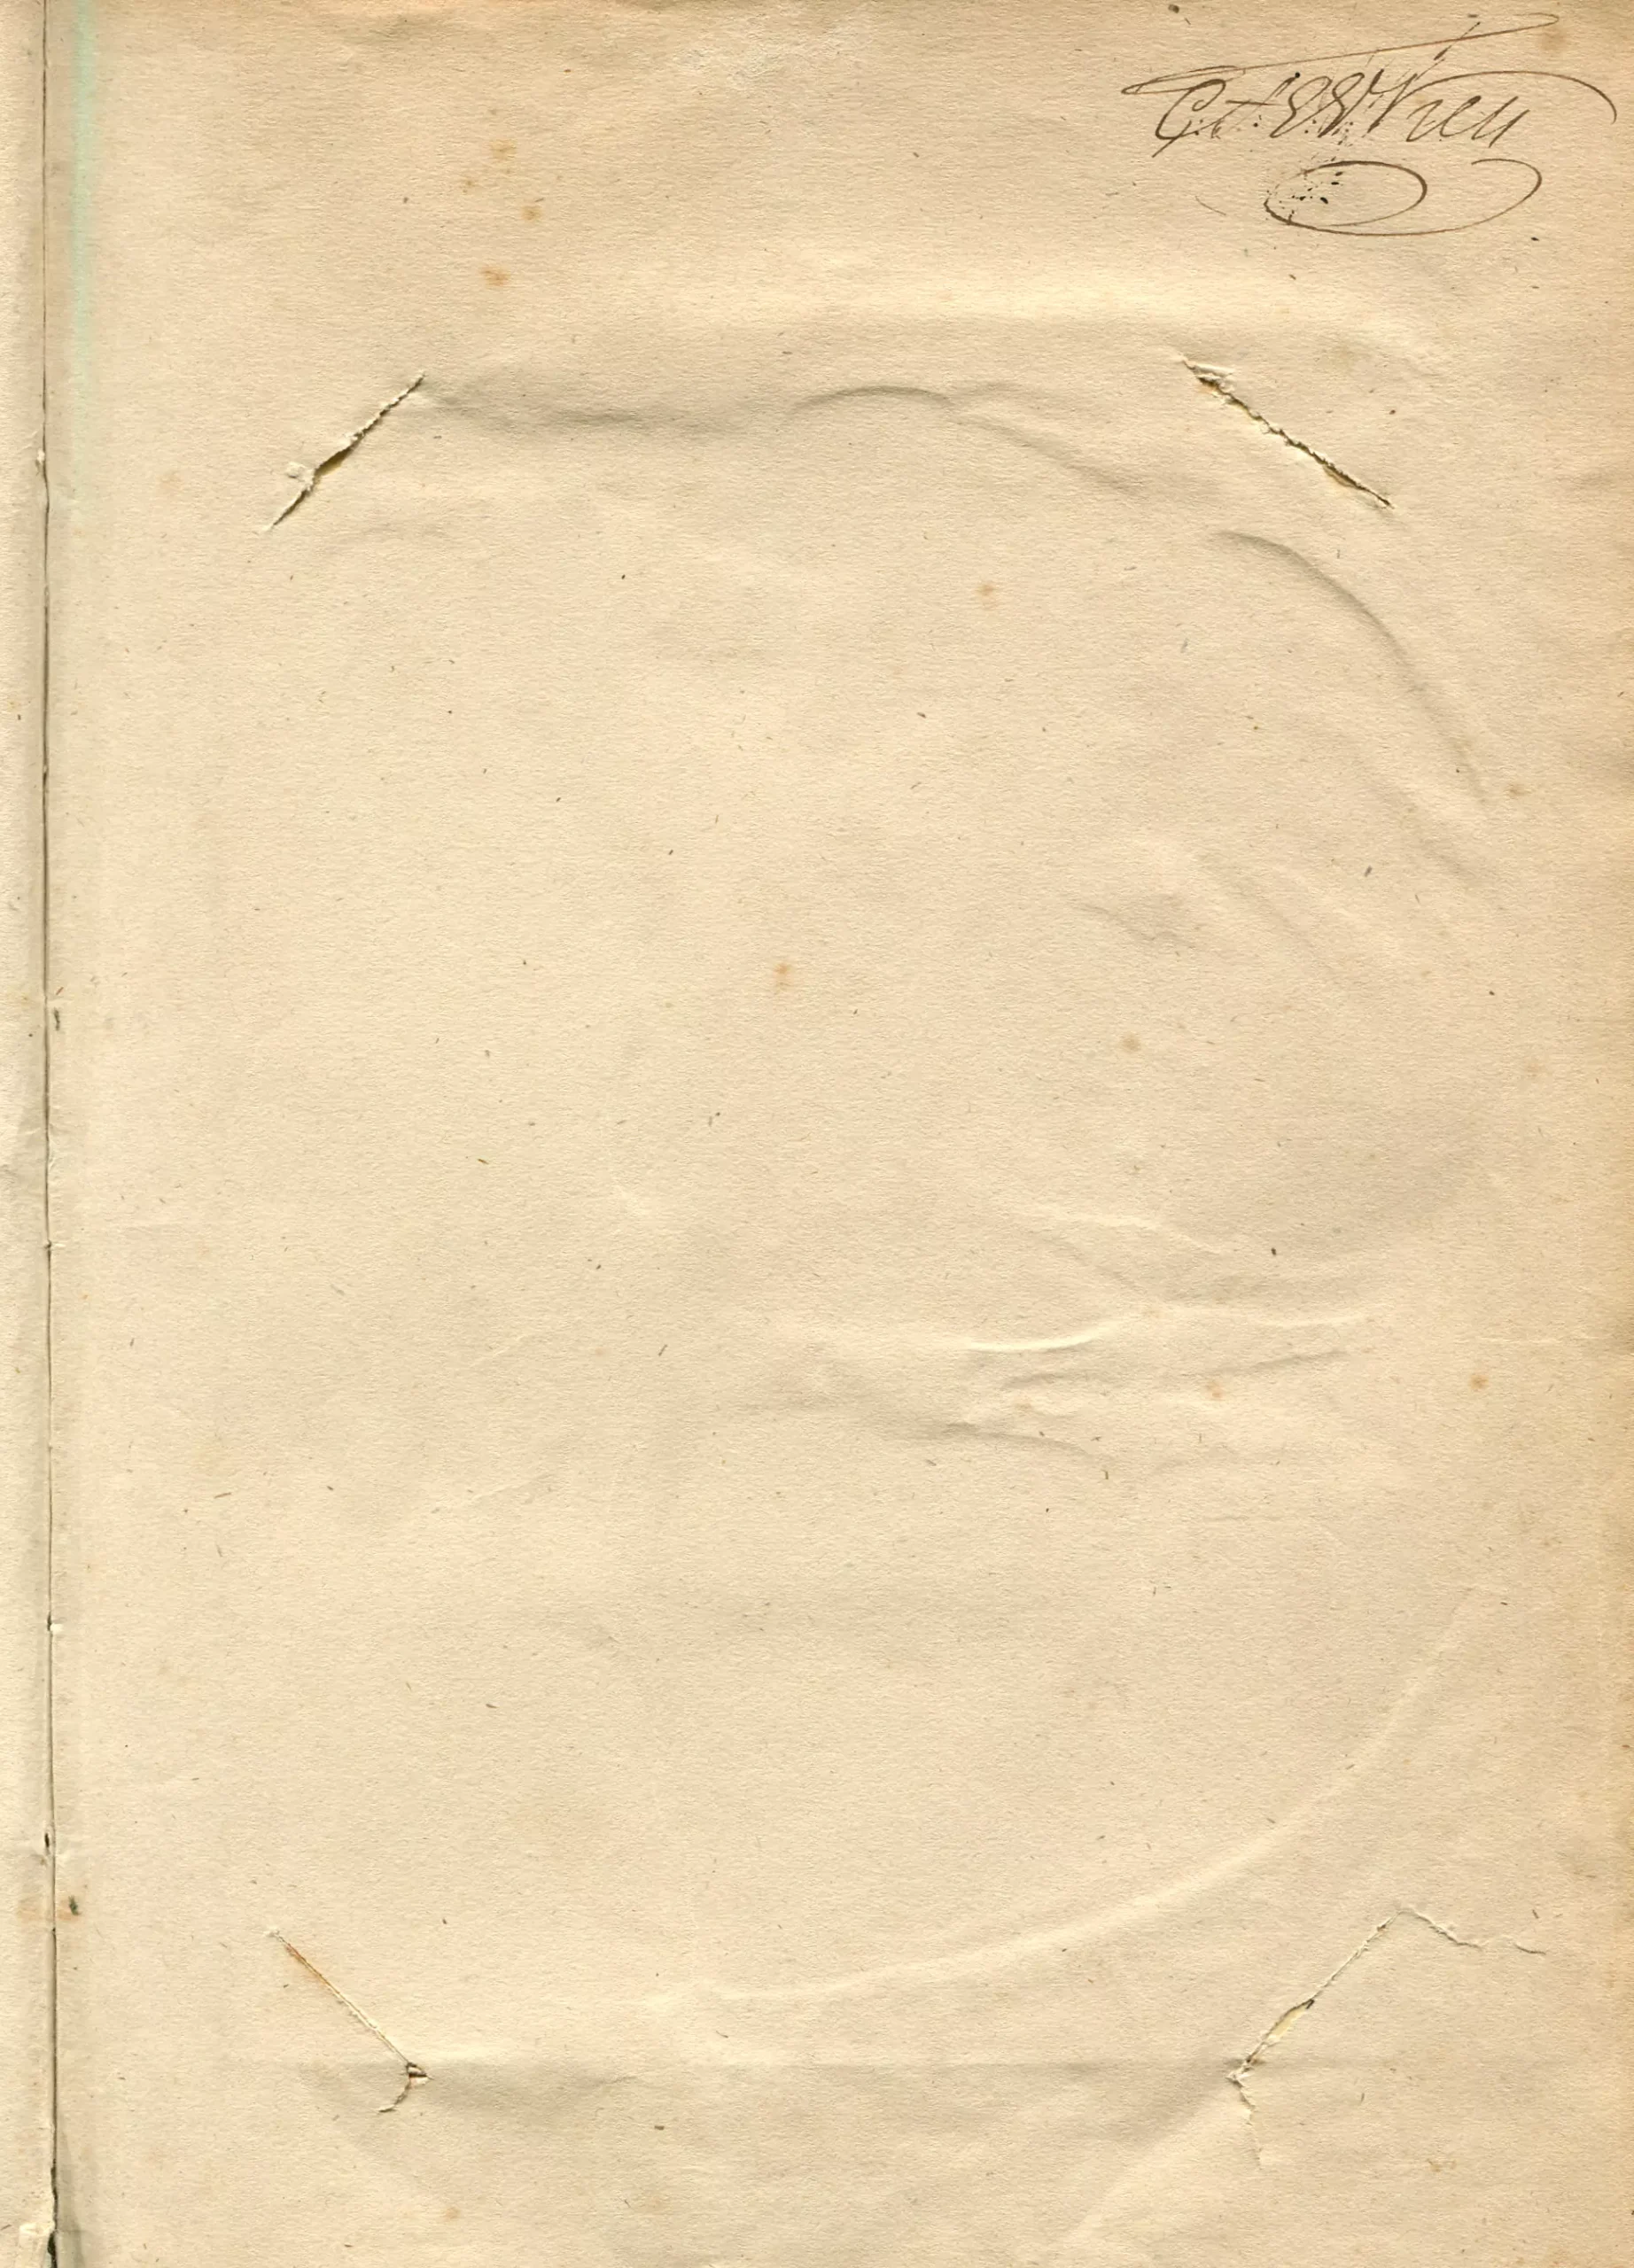 Törnrosens bok 1 Imperial octavupplaga, Stockholm 1839